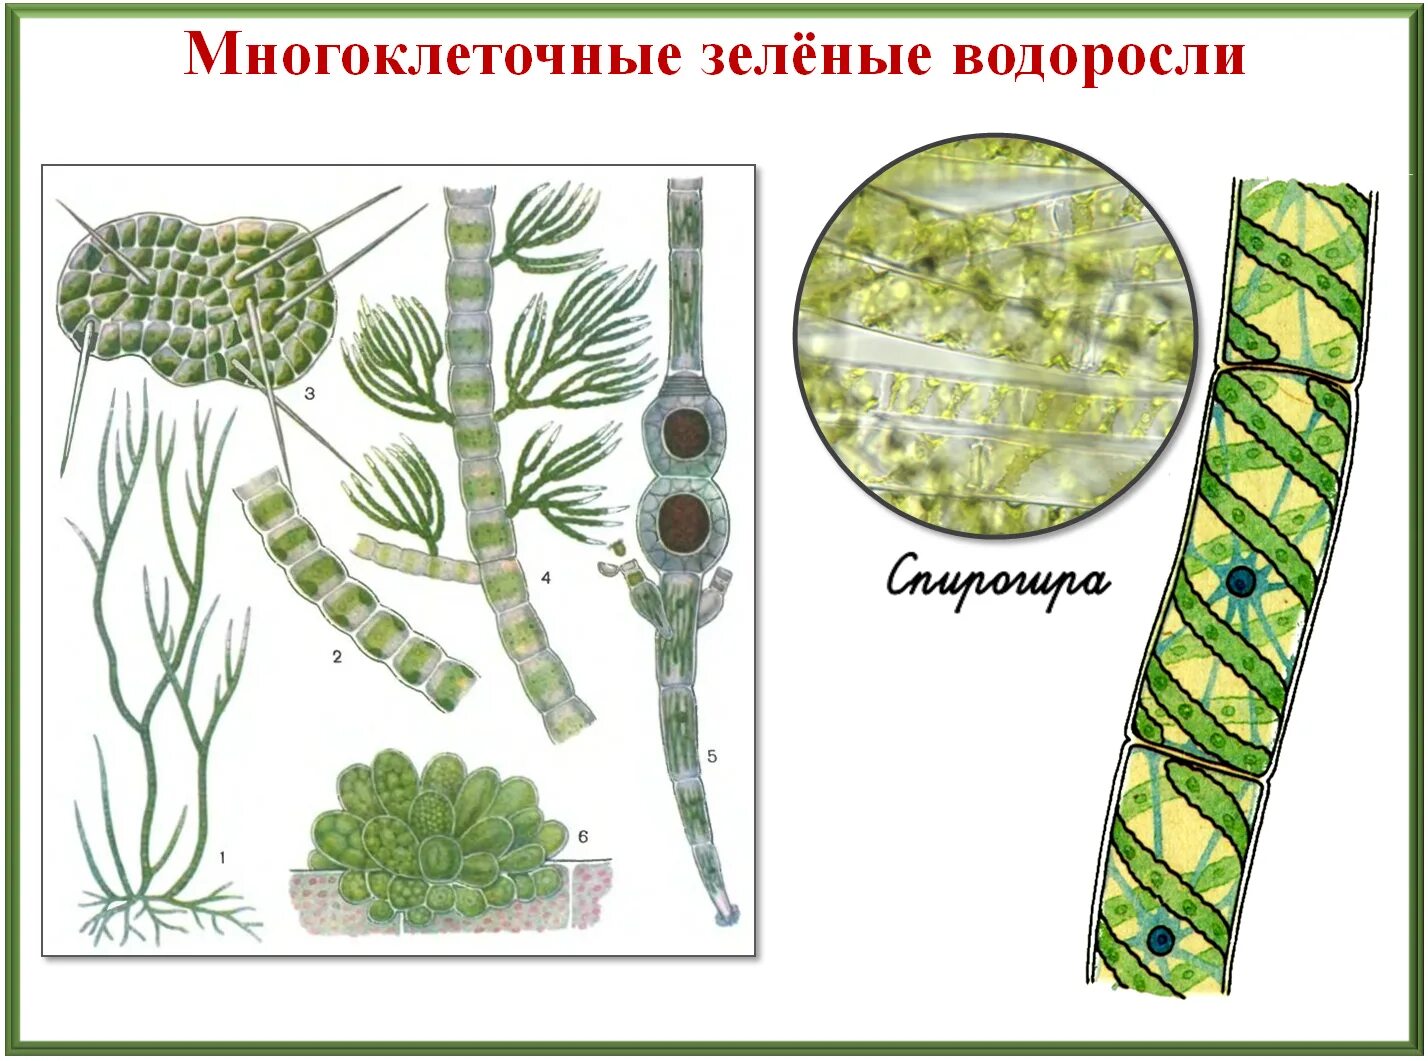 Многоклеточные водоросли состоят из большого. Строение водорослей. Многоклеточные зеленые водоросли. Разнообразие зеленых водорослей. Многообразие и размножение водорослей.